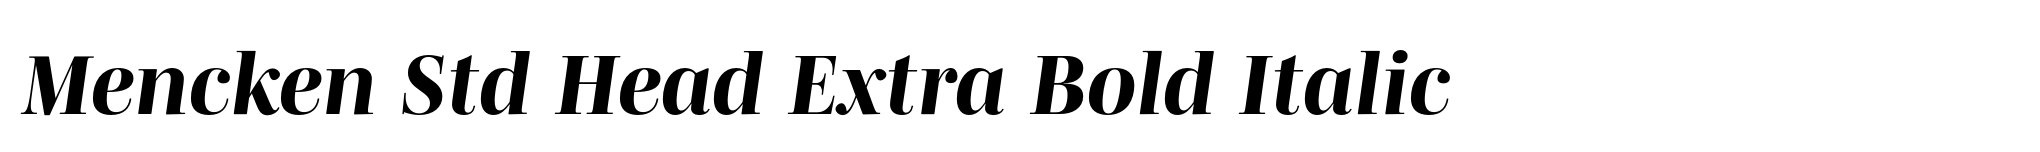 Mencken Std Head Extra Bold Italic image